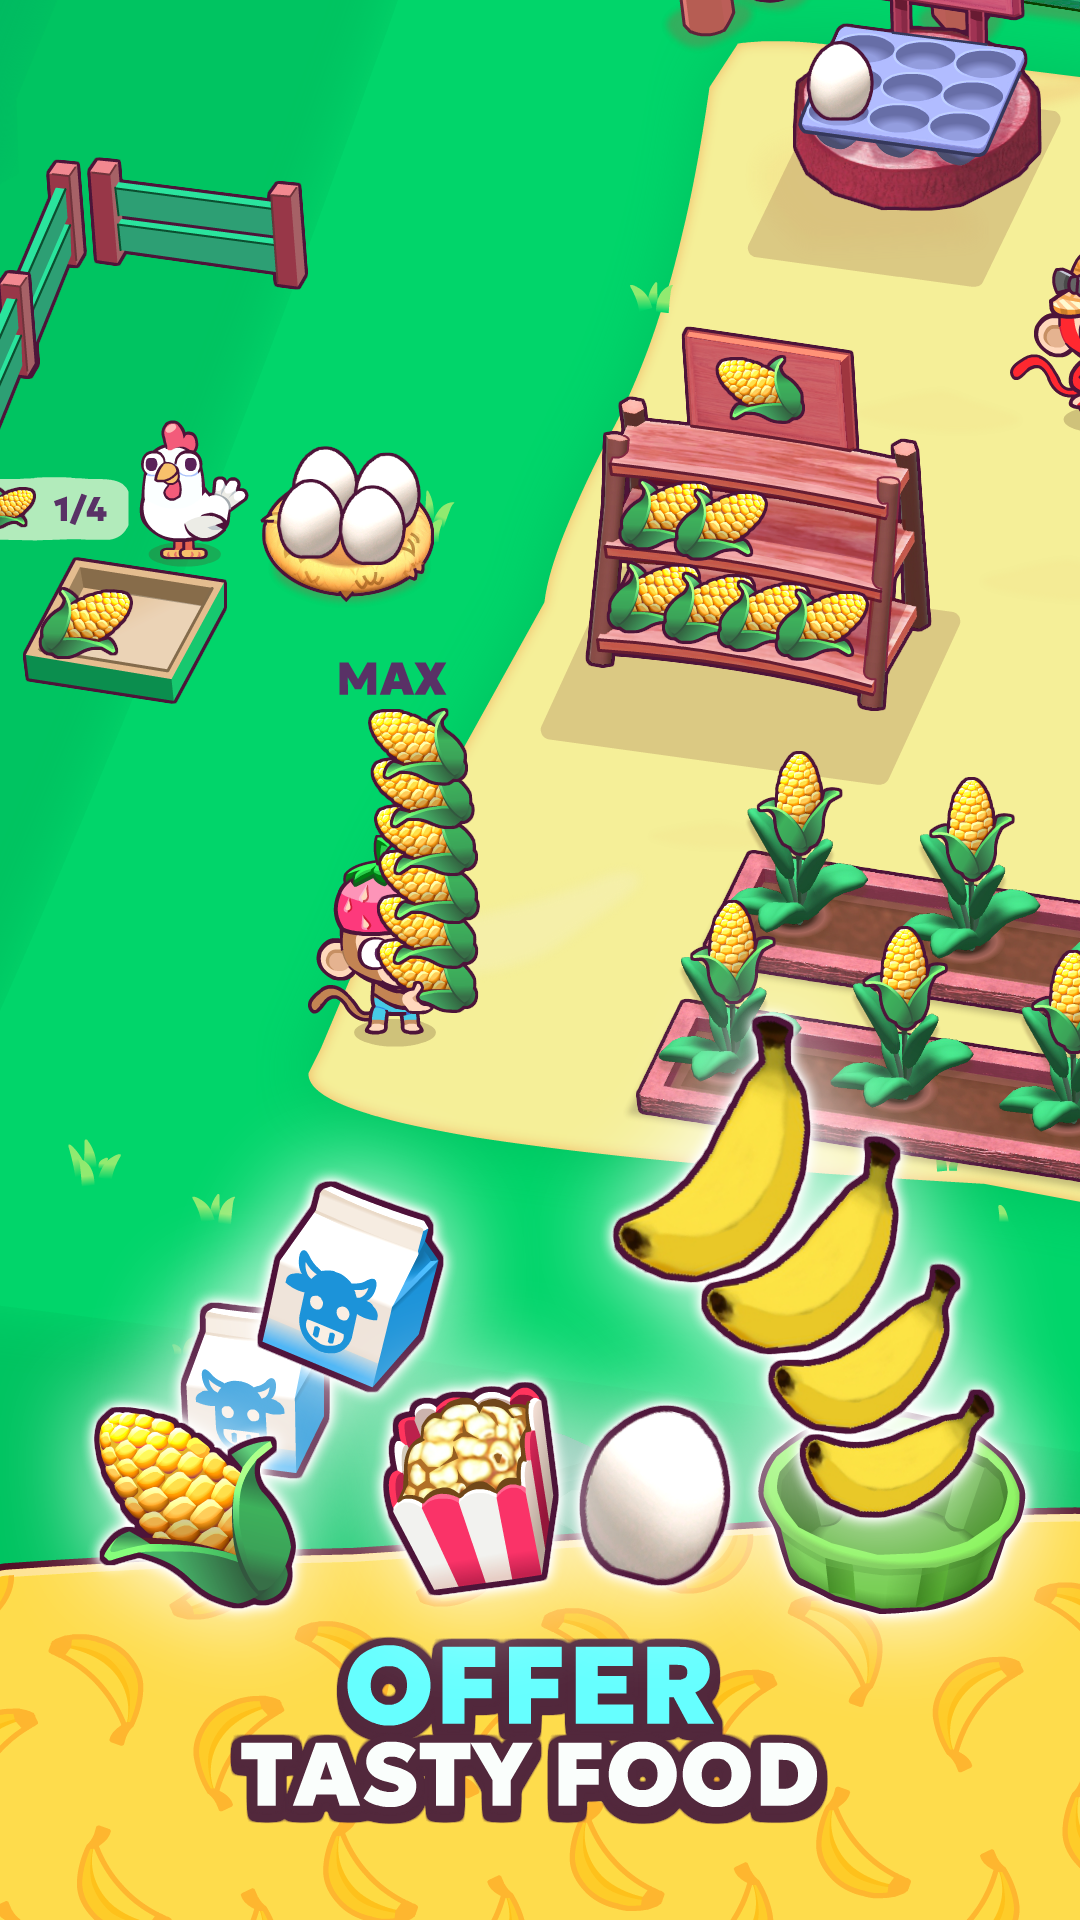 Monkey Mart is bananas!